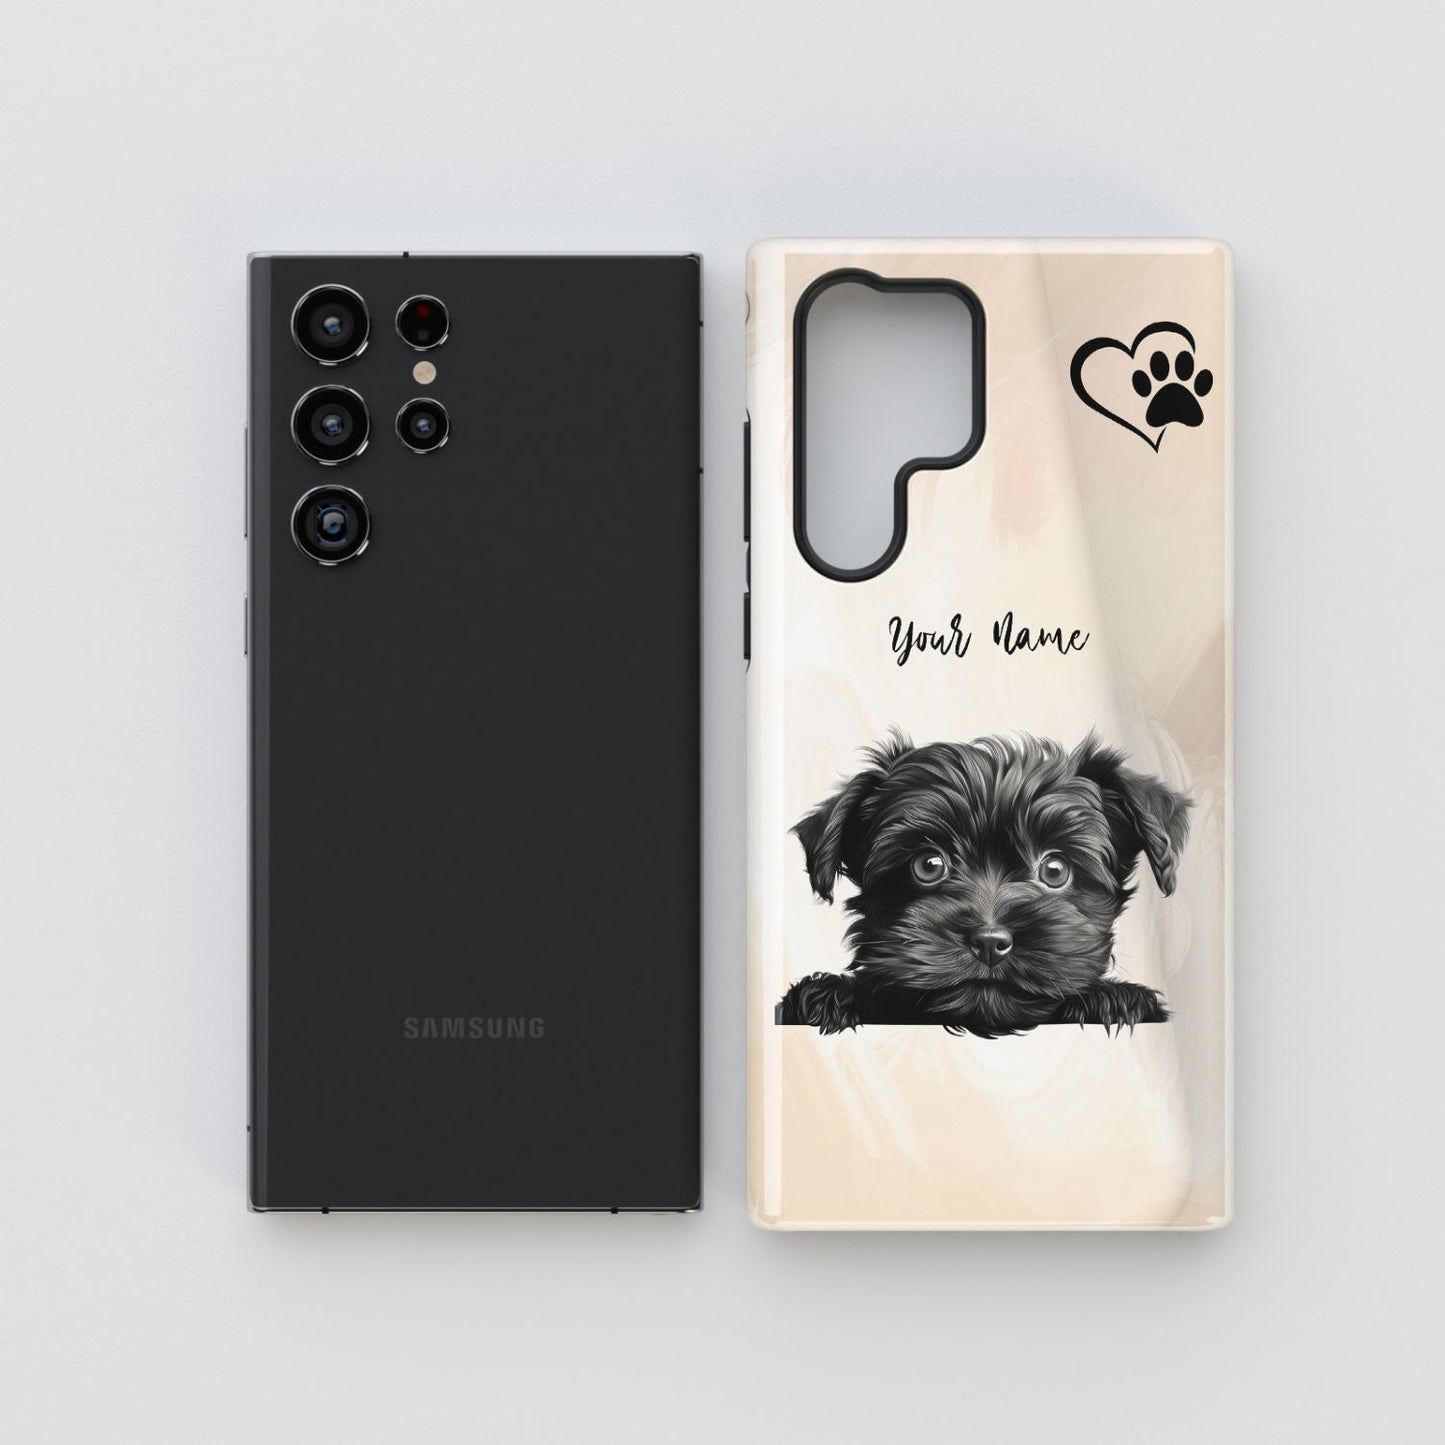 Affenpinscher Dog Phone - Samsung Galaxy S